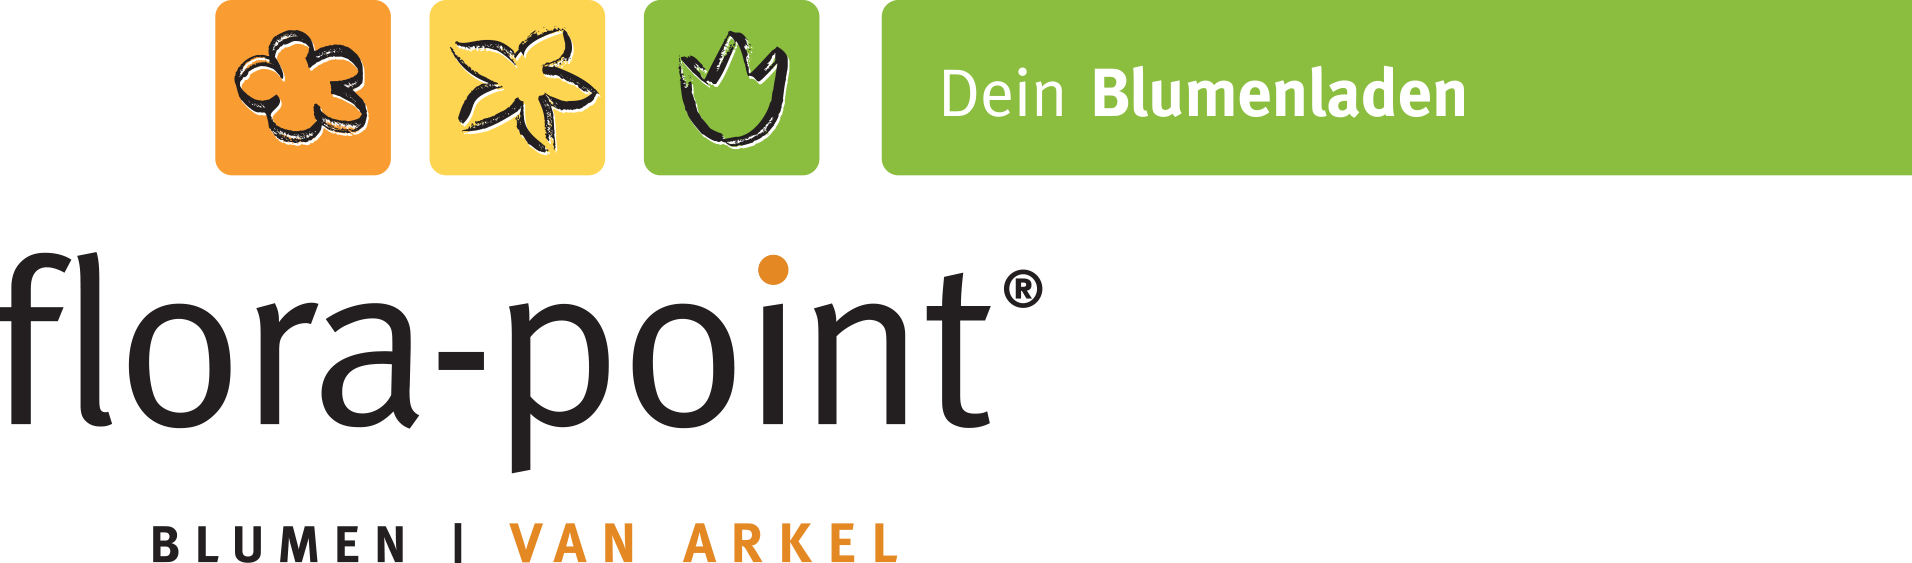 Bild 2 flora-point Blumenshop GmbH in Dortmund